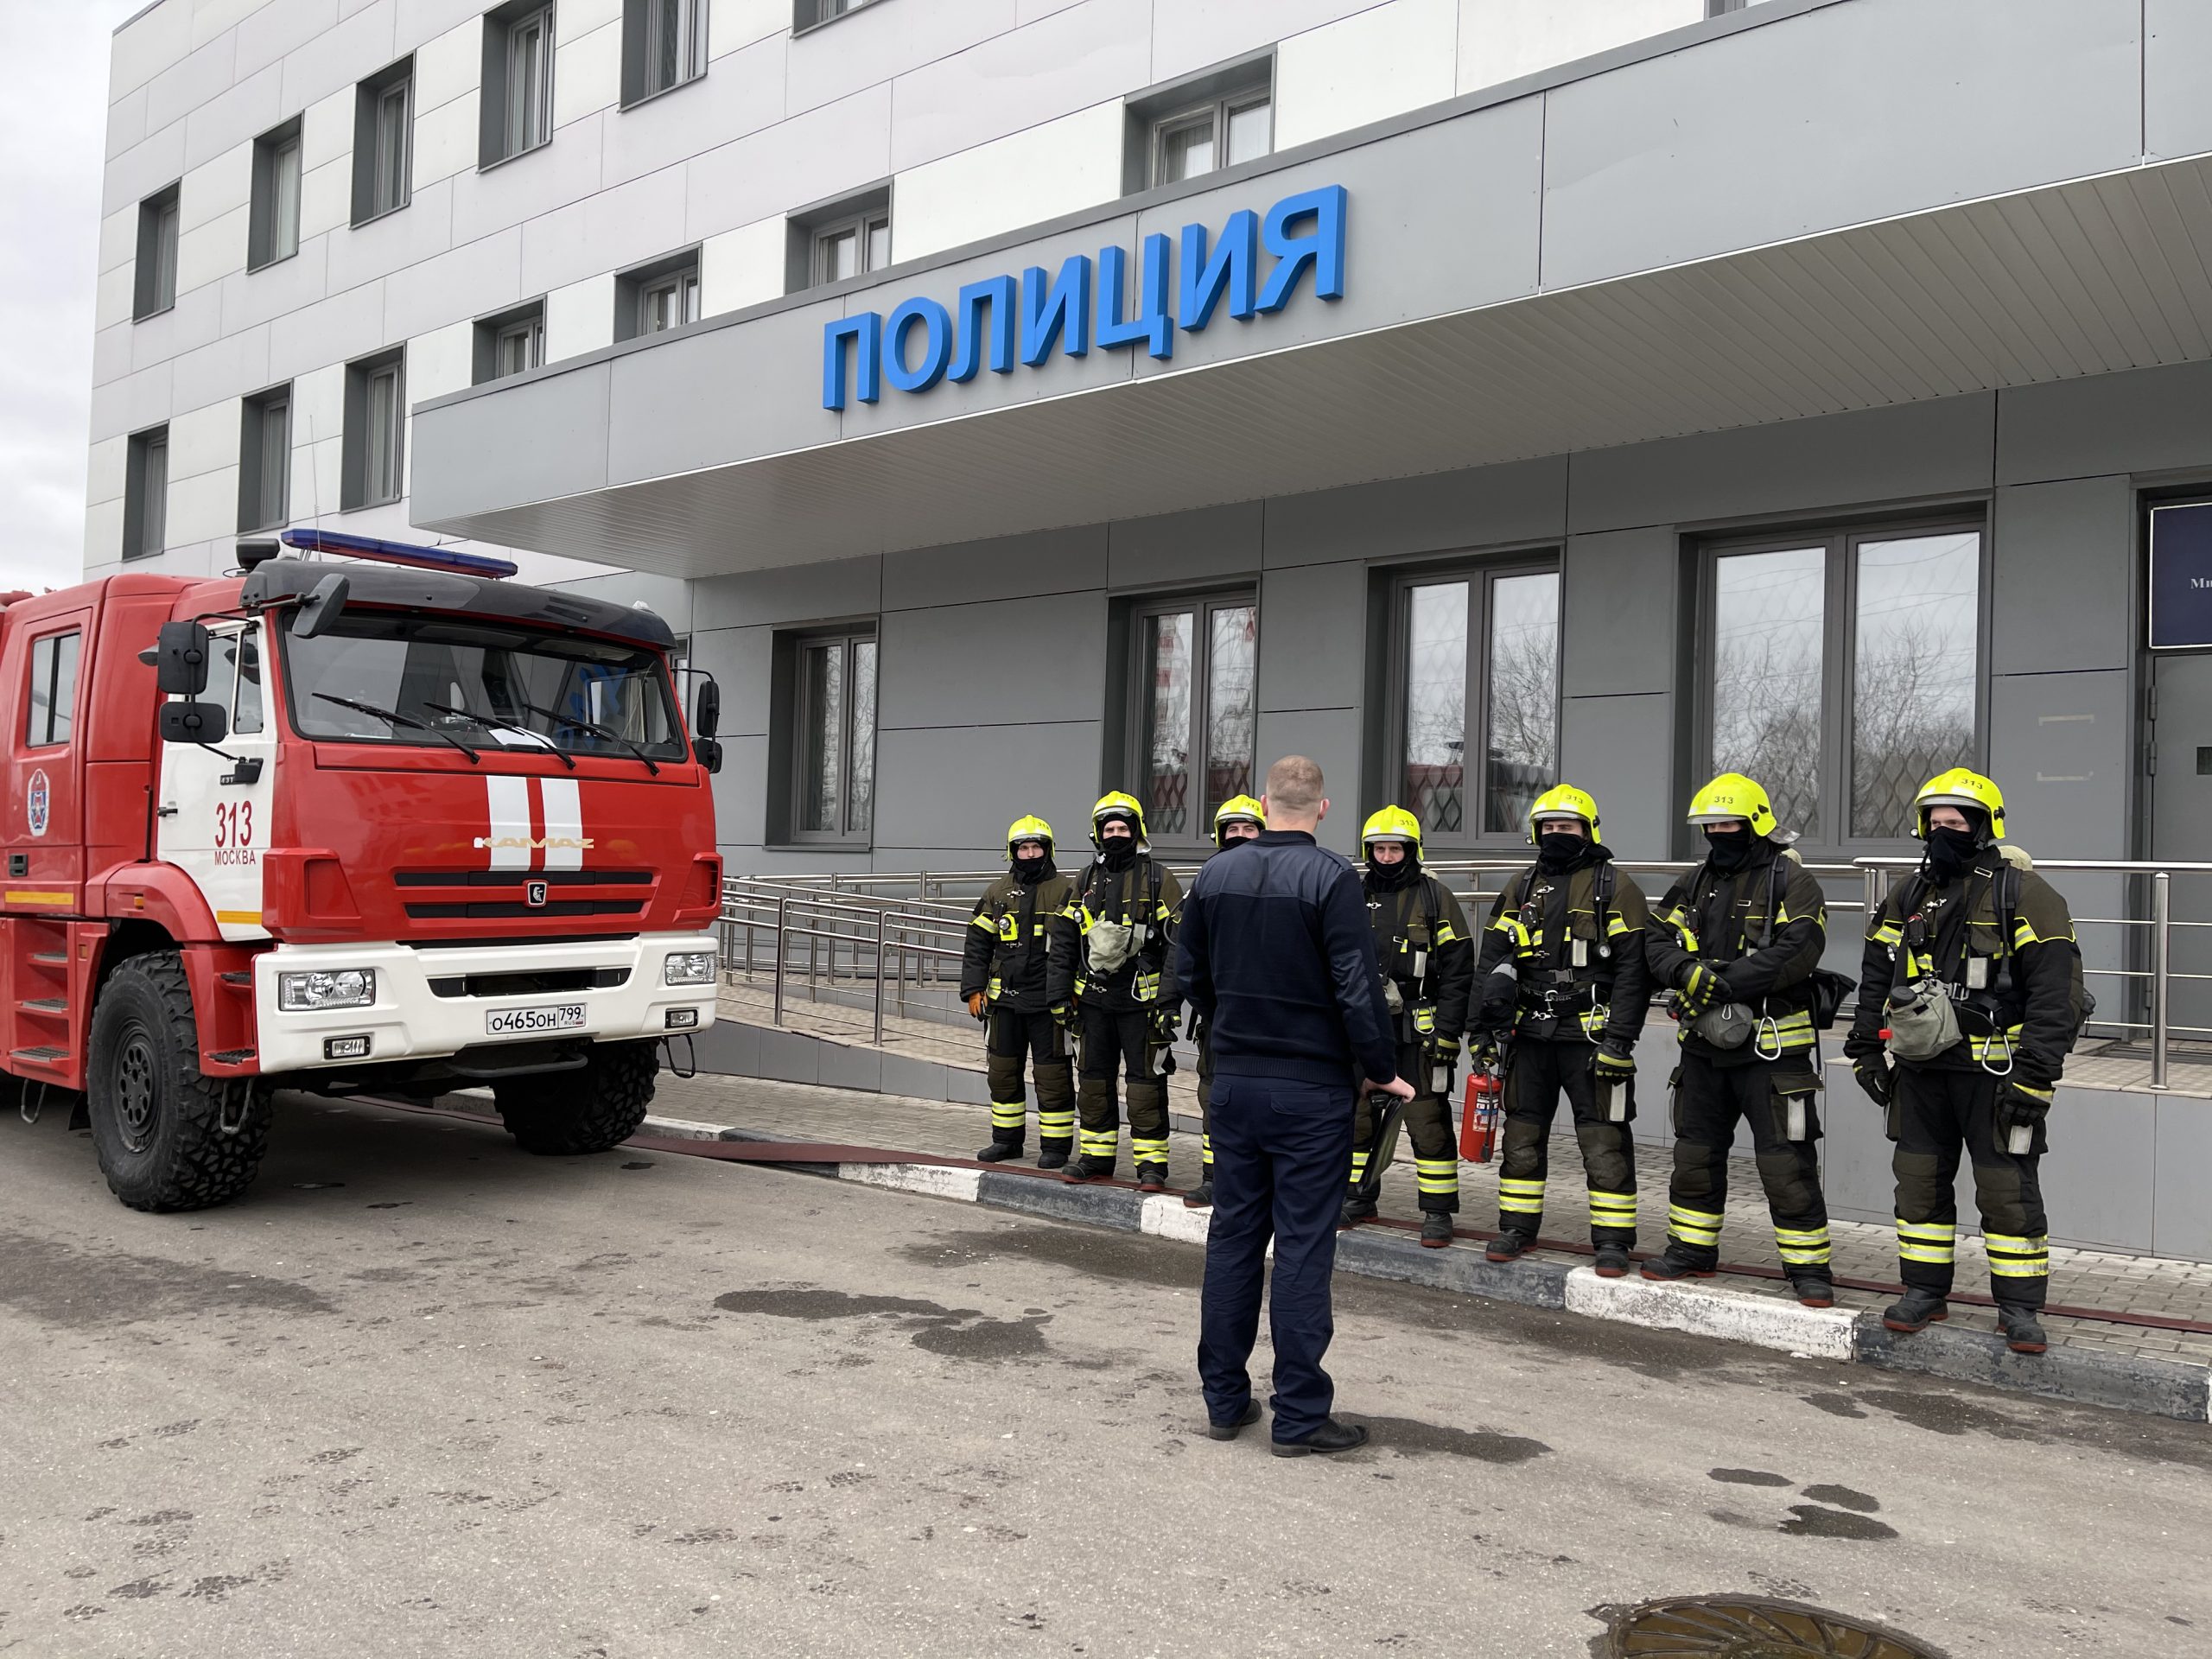 Пожарно-тактическое занятие провели в Новой Москве. Фото: пресс-служба Управления по ТиНАО Департамента ГОЧСиПБ